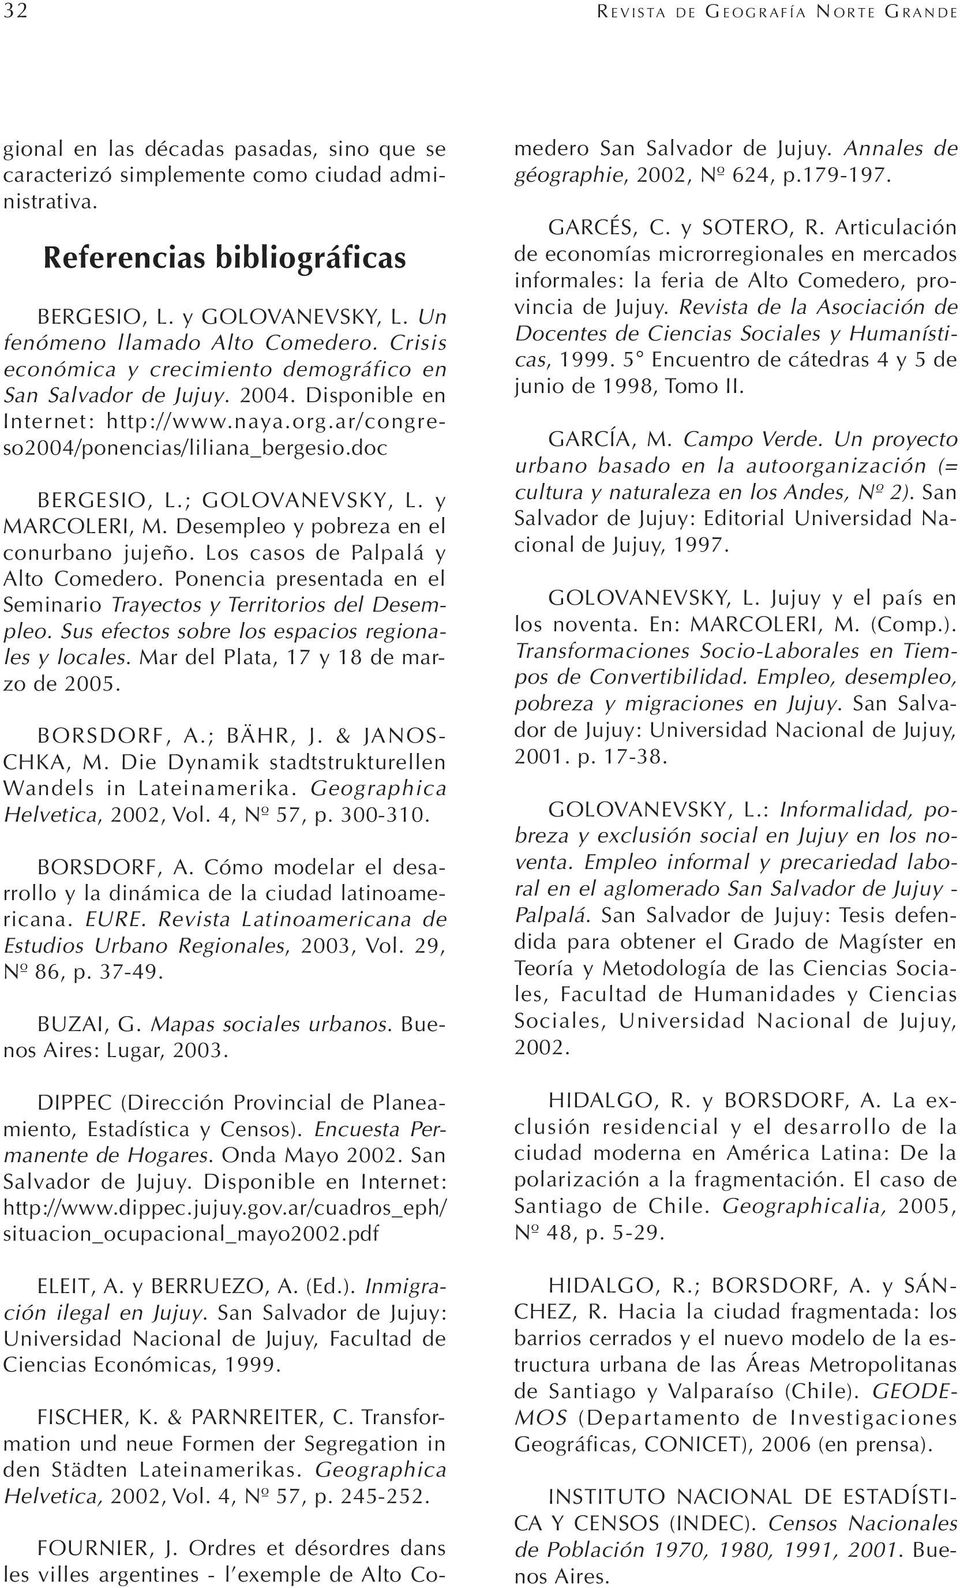 doc BERGESIO, L.; GOLOVANEVSKY, L. y MARCOLERI, M. Desempleo y pobreza en el conurbano jujeño. Los casos de Palpalá y Alto Comedero.